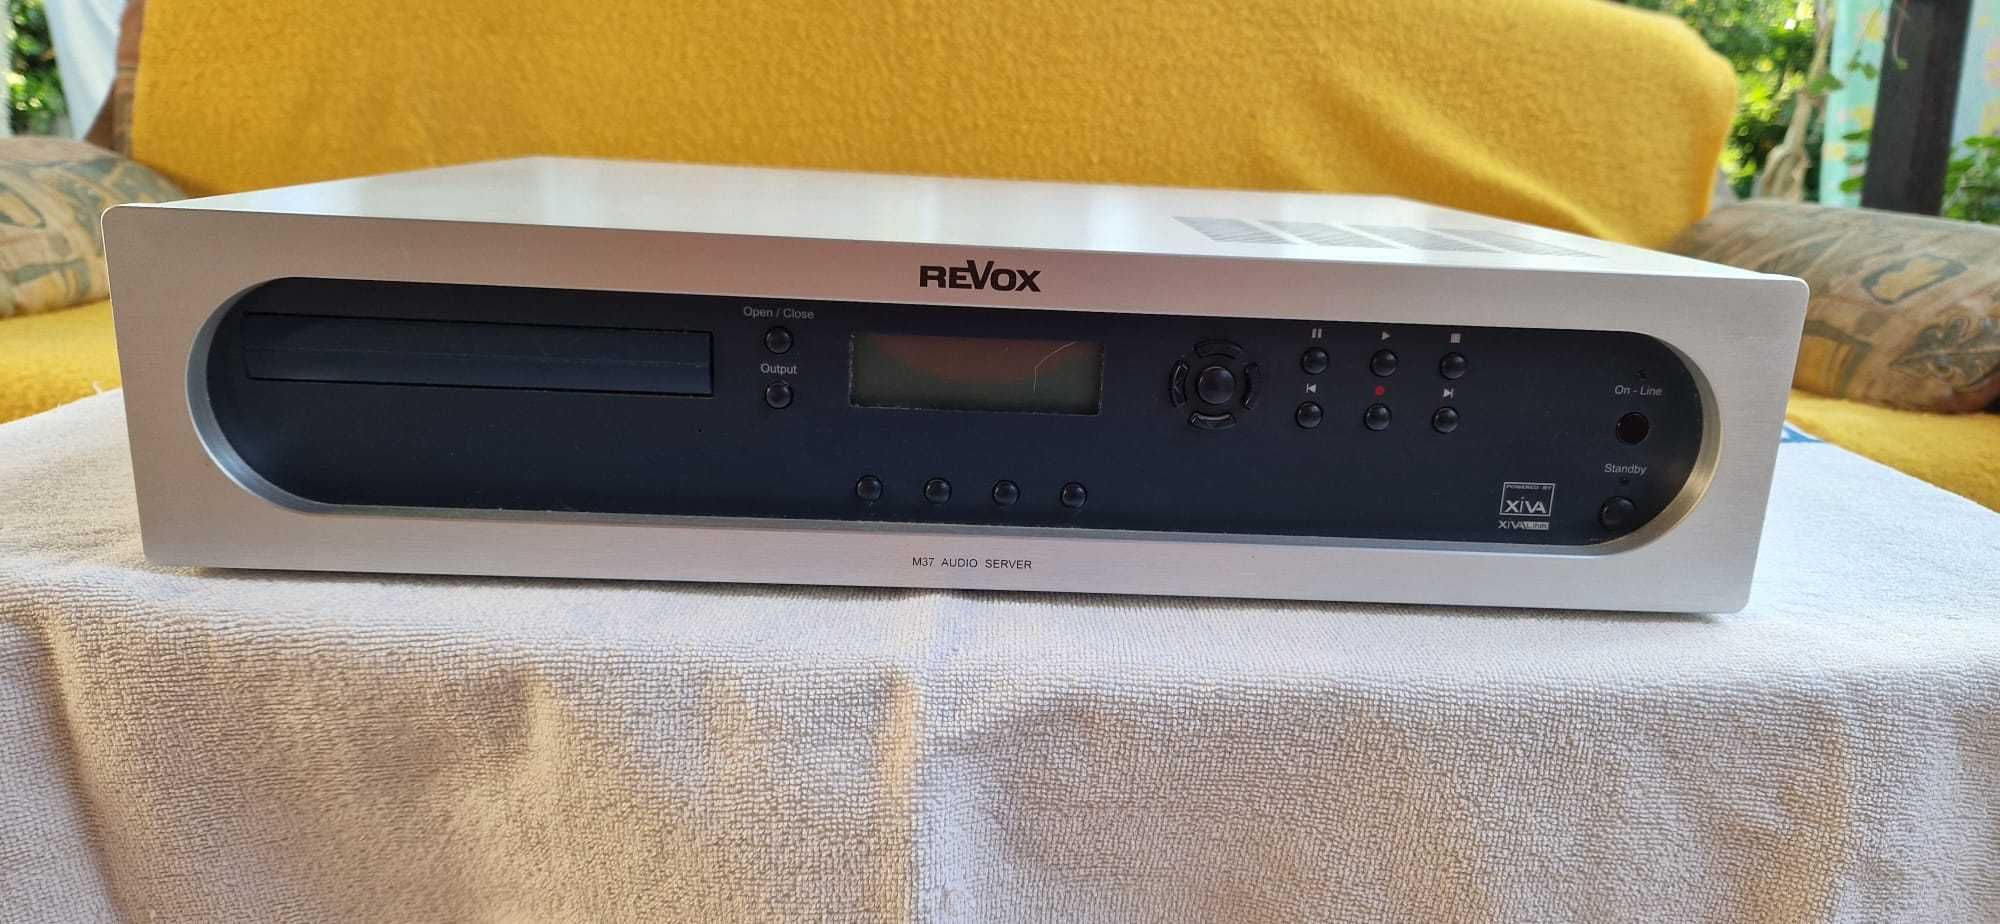 revox m37 audio server (defect) pret fix